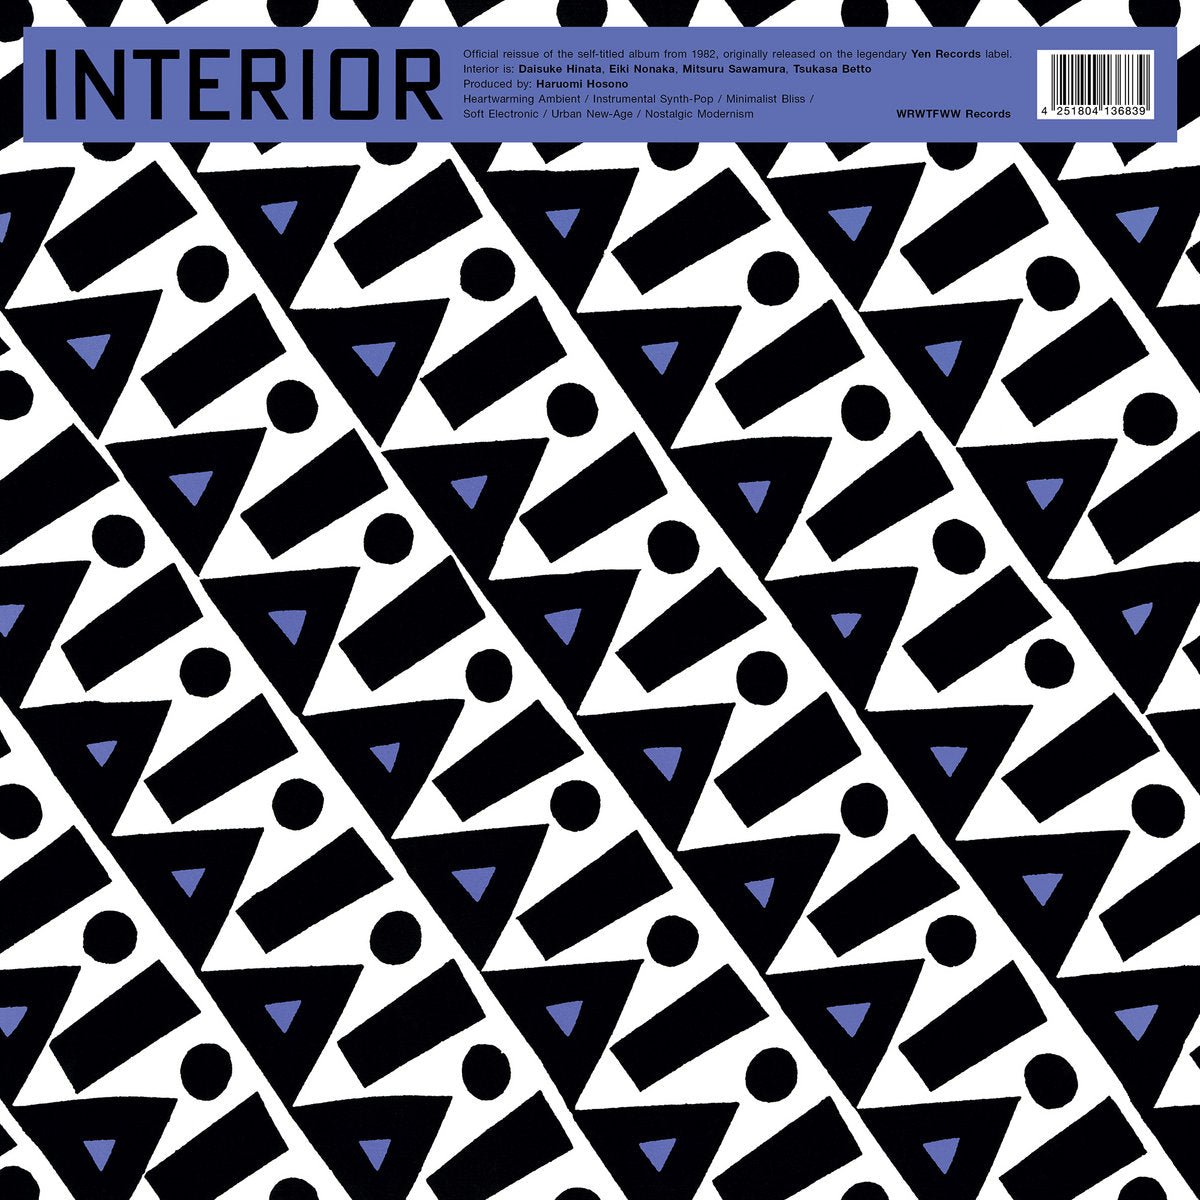 Interior - Interior - Inner Ocean Records